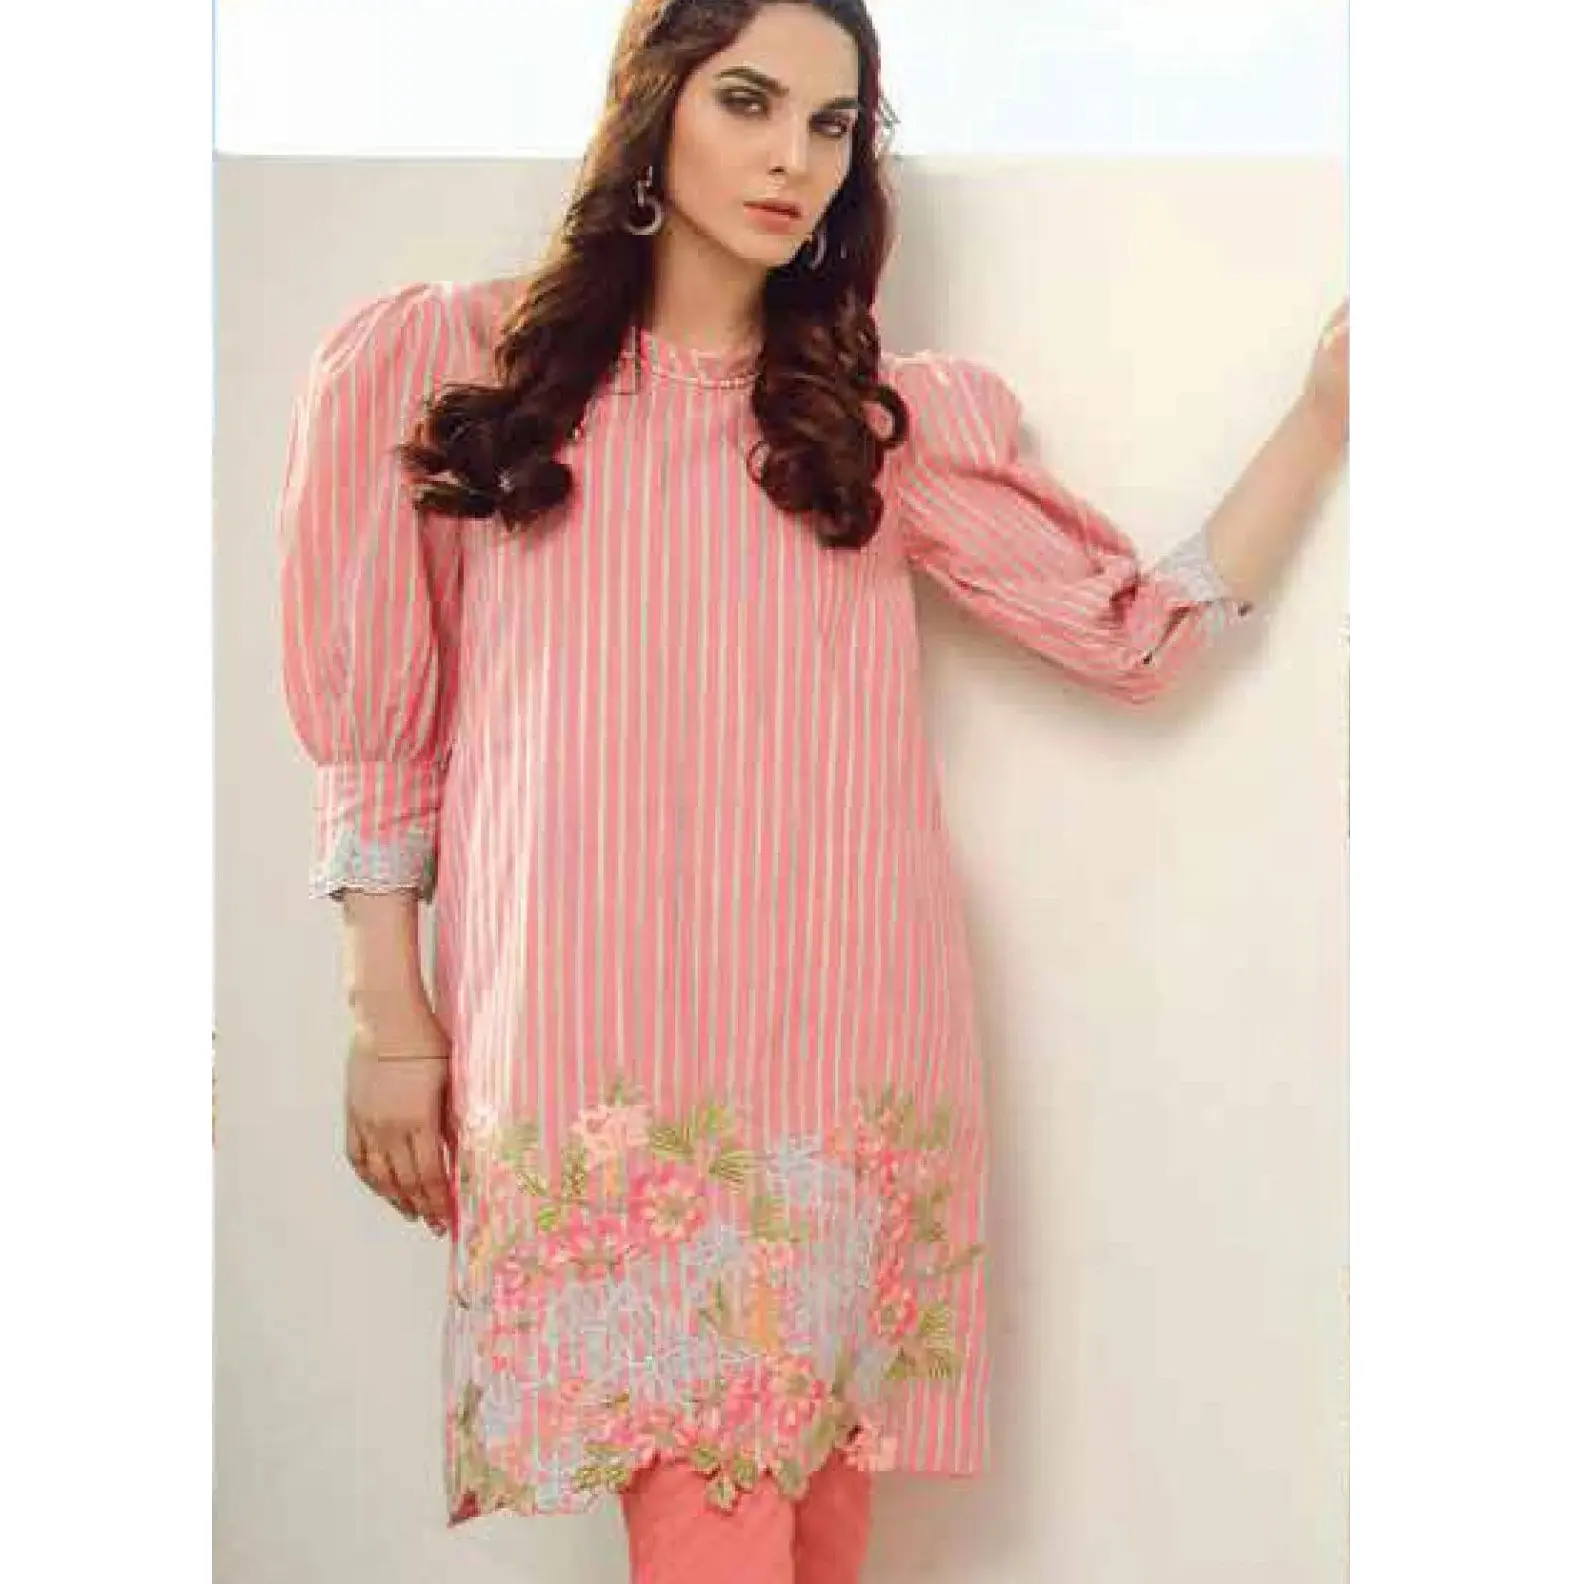 New causal lawn dress Pakistani new design hot selling beautiful color shalwar kameez kurta long churidar